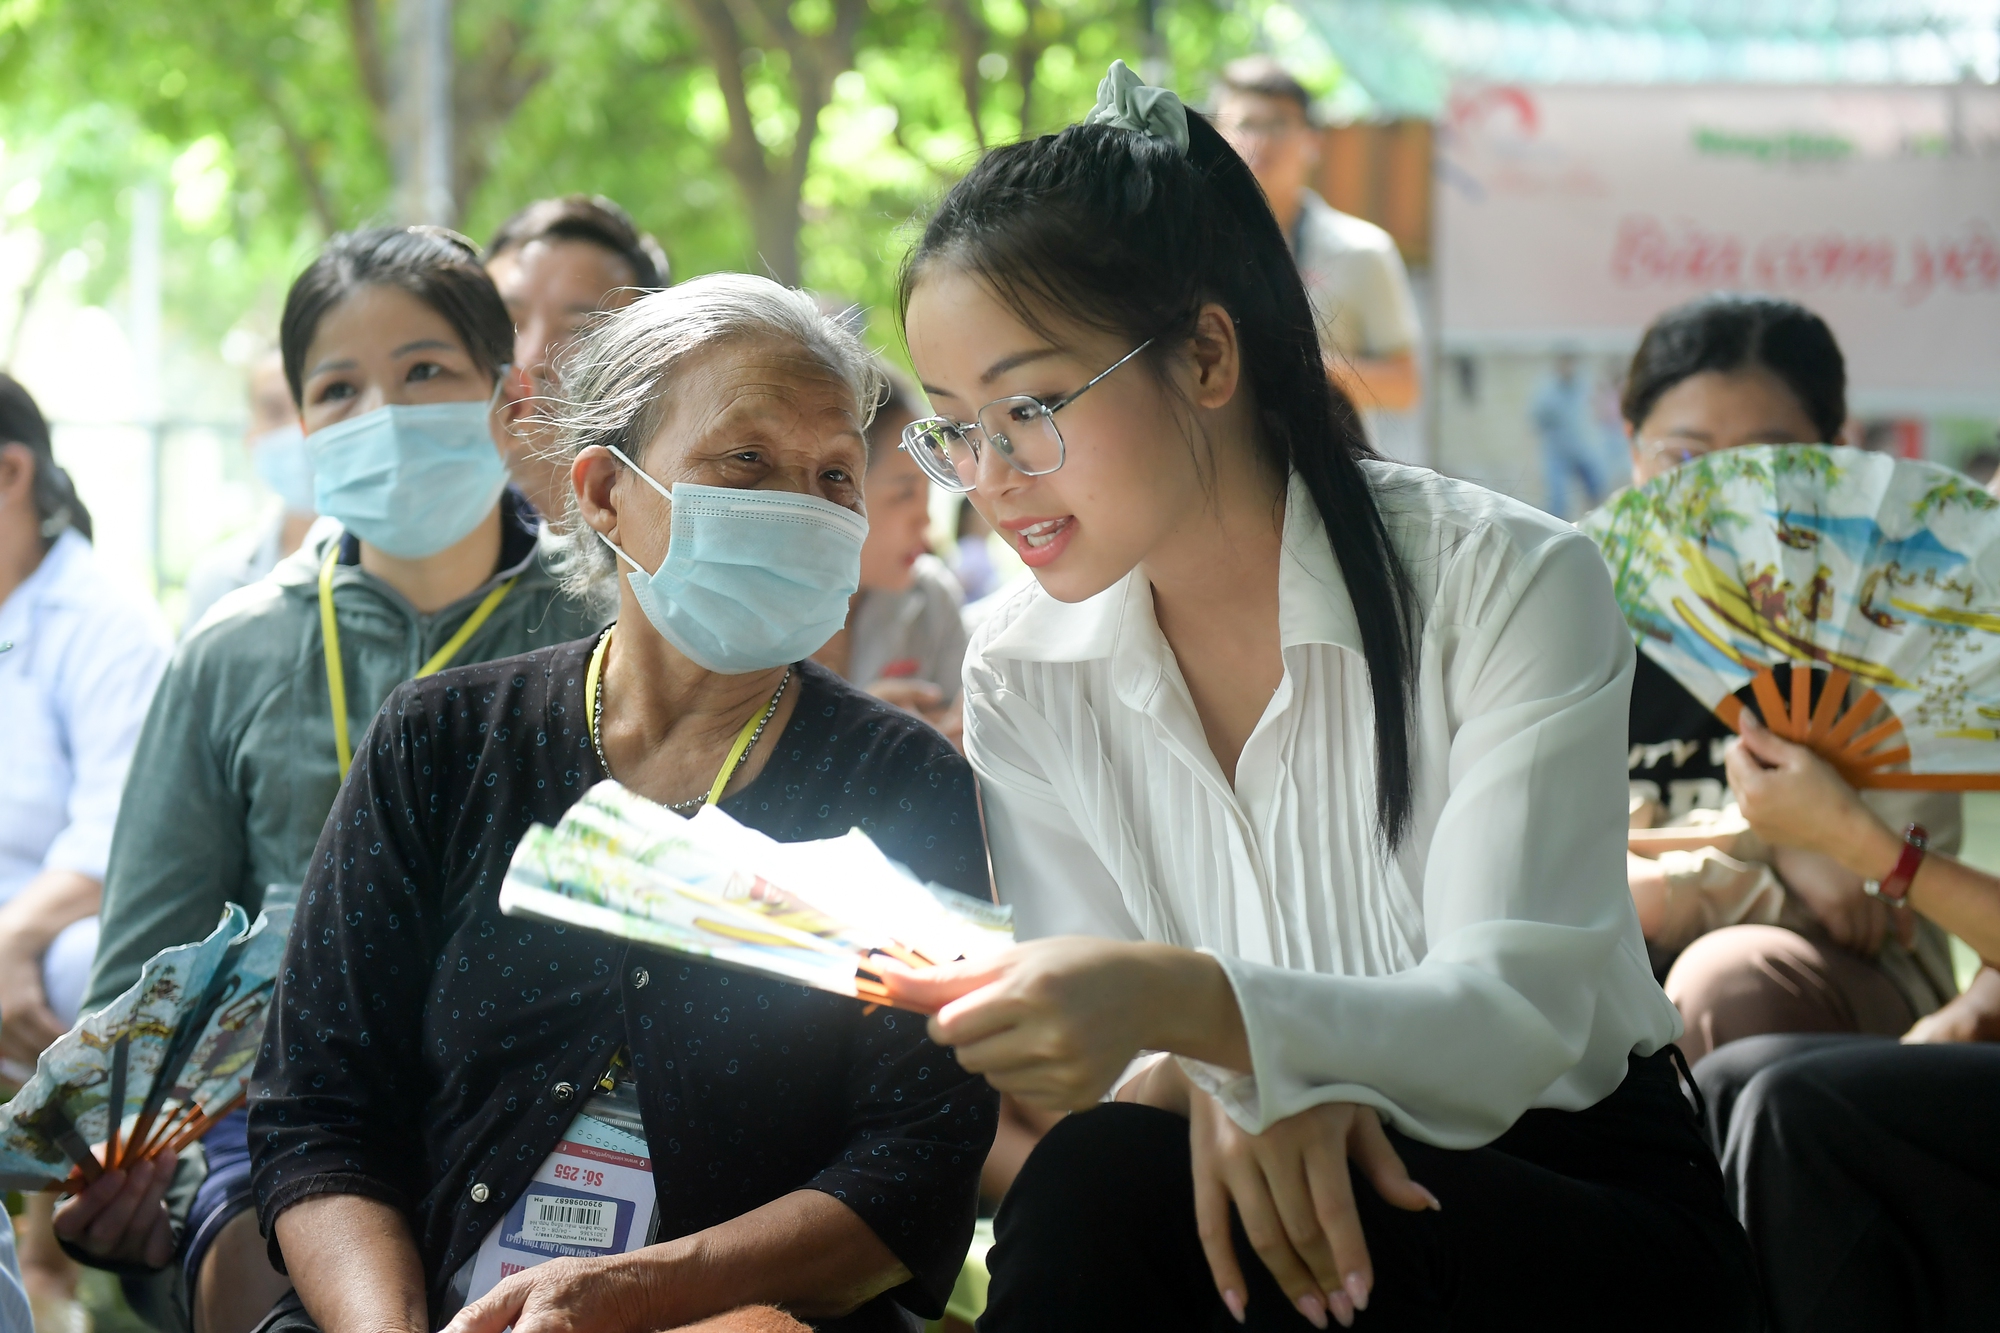 Á hậu 1 Đào Thị Hiền tặng 500 cây giống, trao quà cho 25 bệnh nhân khó khăn tại Chợ Quê  - Ảnh 3.